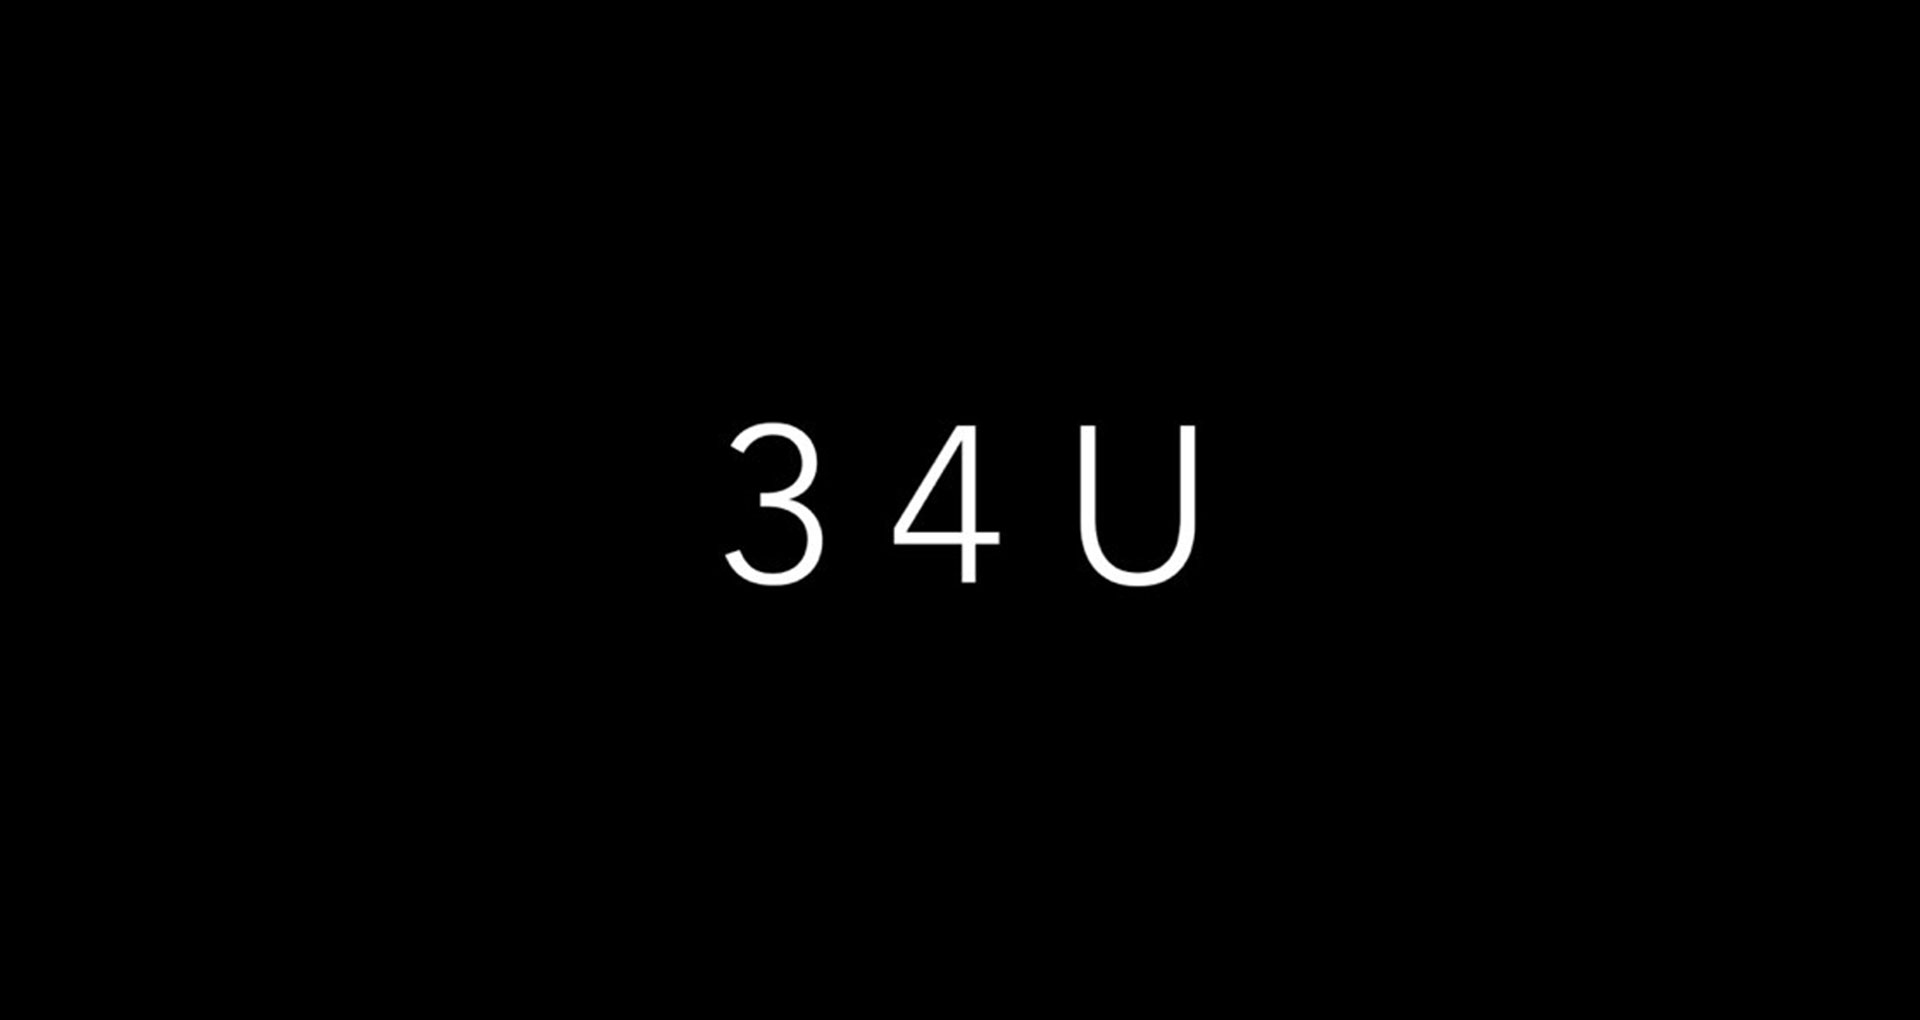 34U